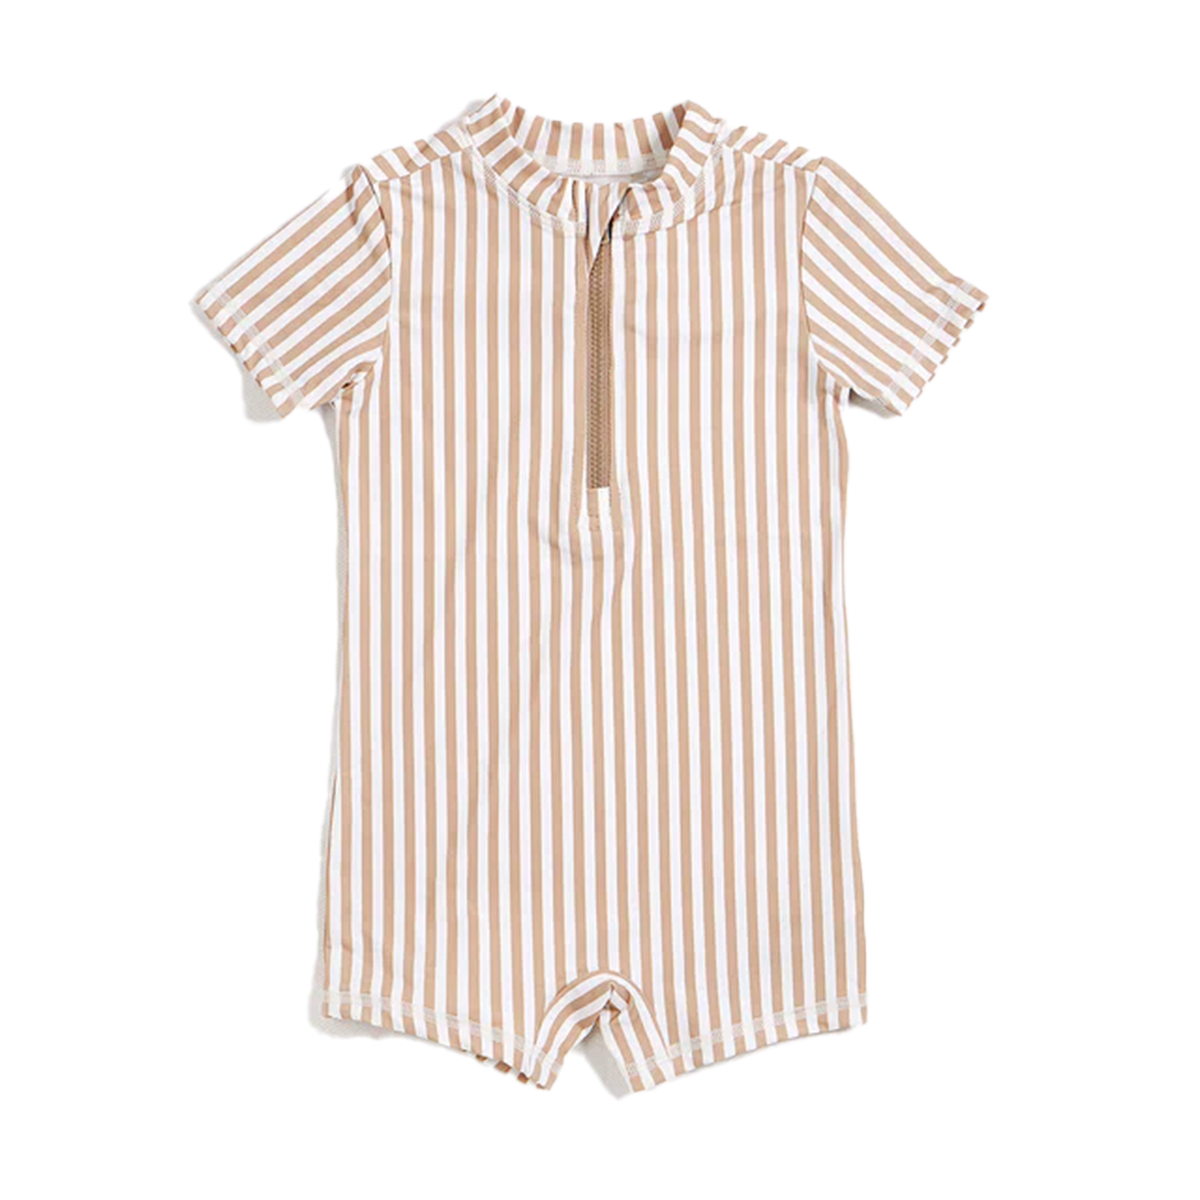 Khaki Striped Baby Boy's One-Piece Rashguard Swimsuit